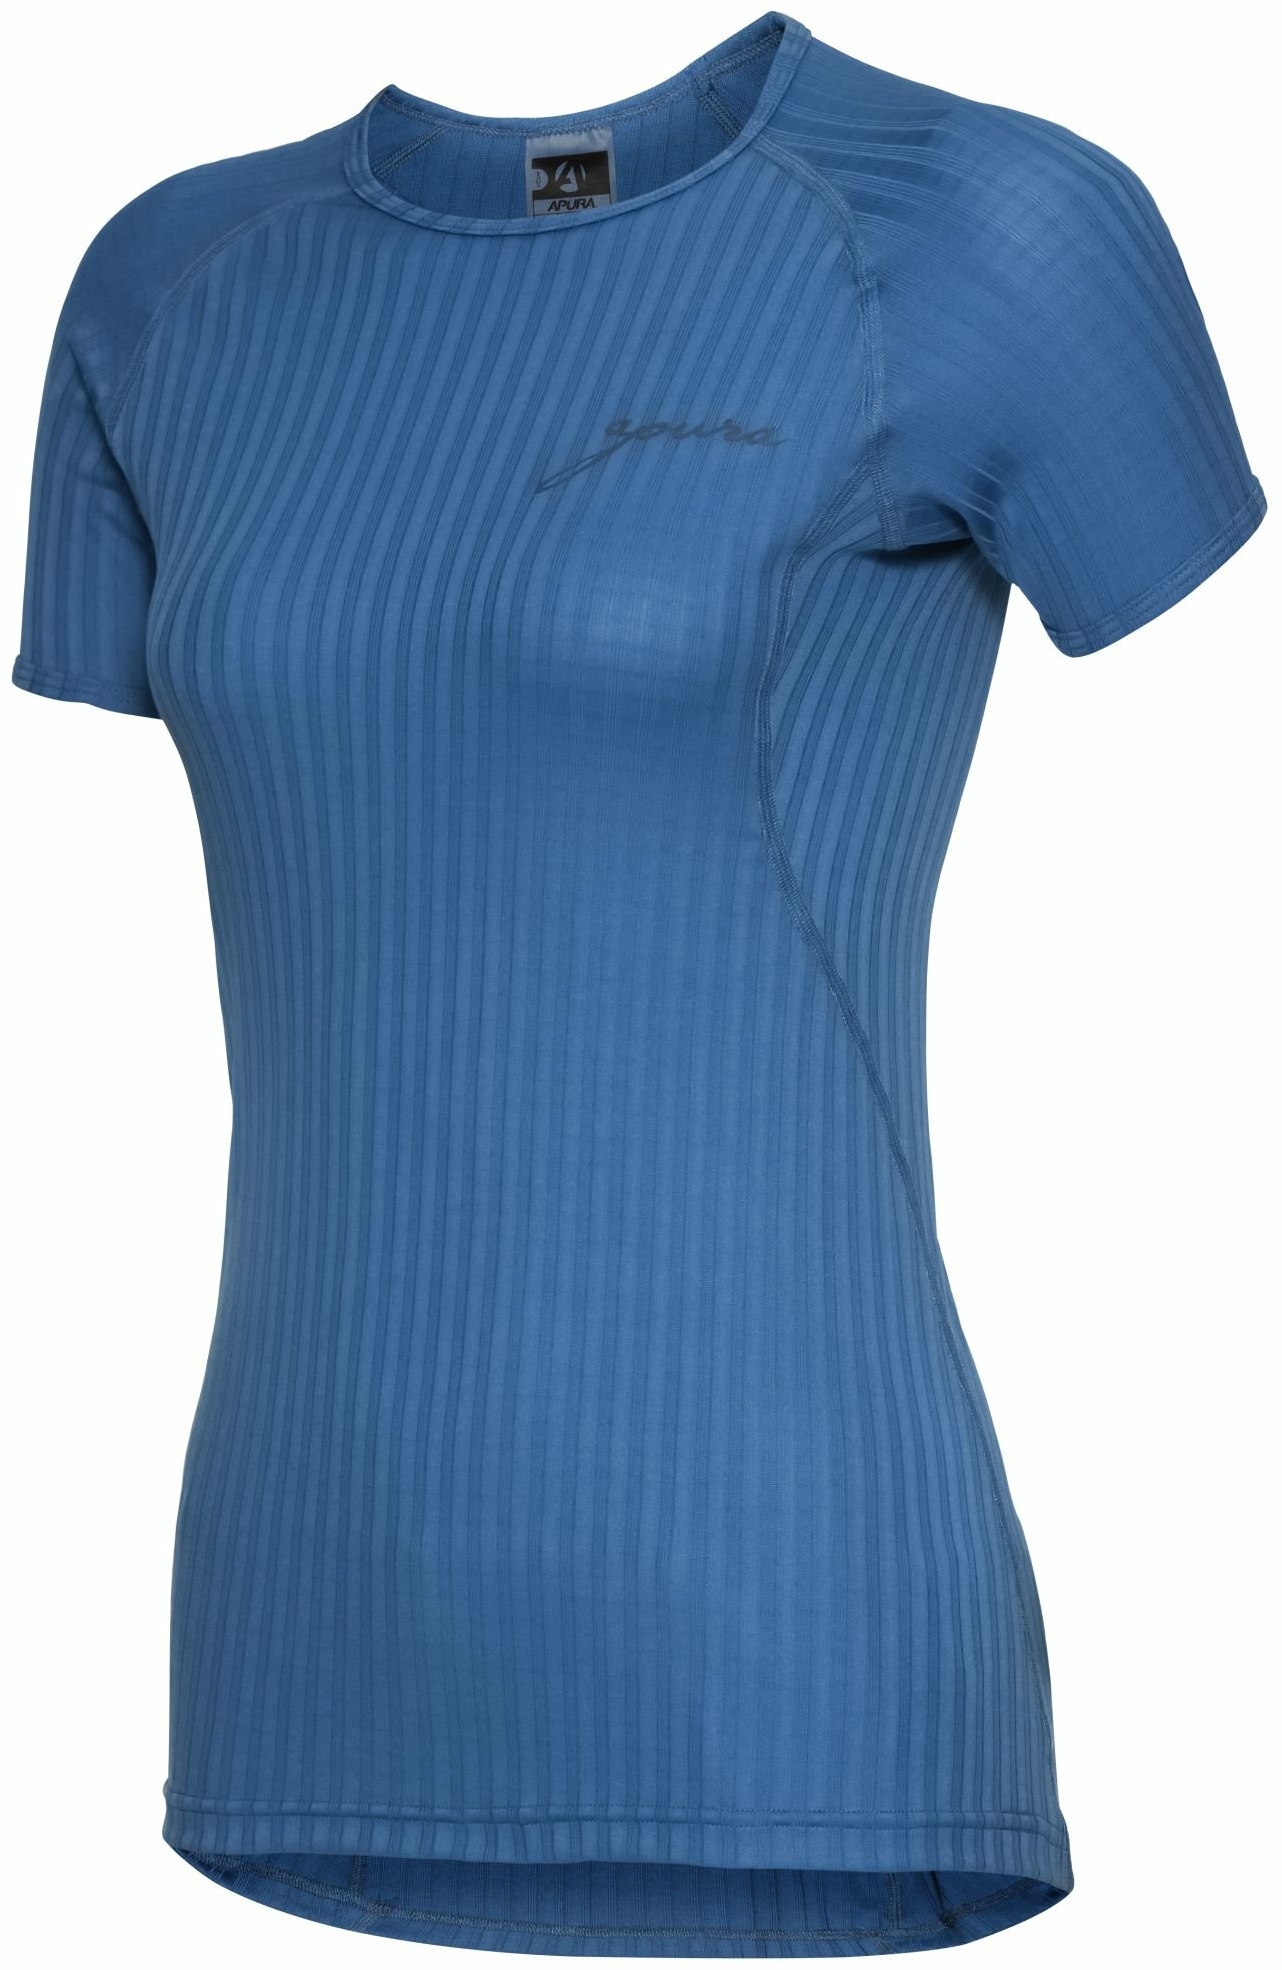 Bekleidung/Unterwäsche: Apura  Damen Unterhemd Kurzarm Ory XXL 